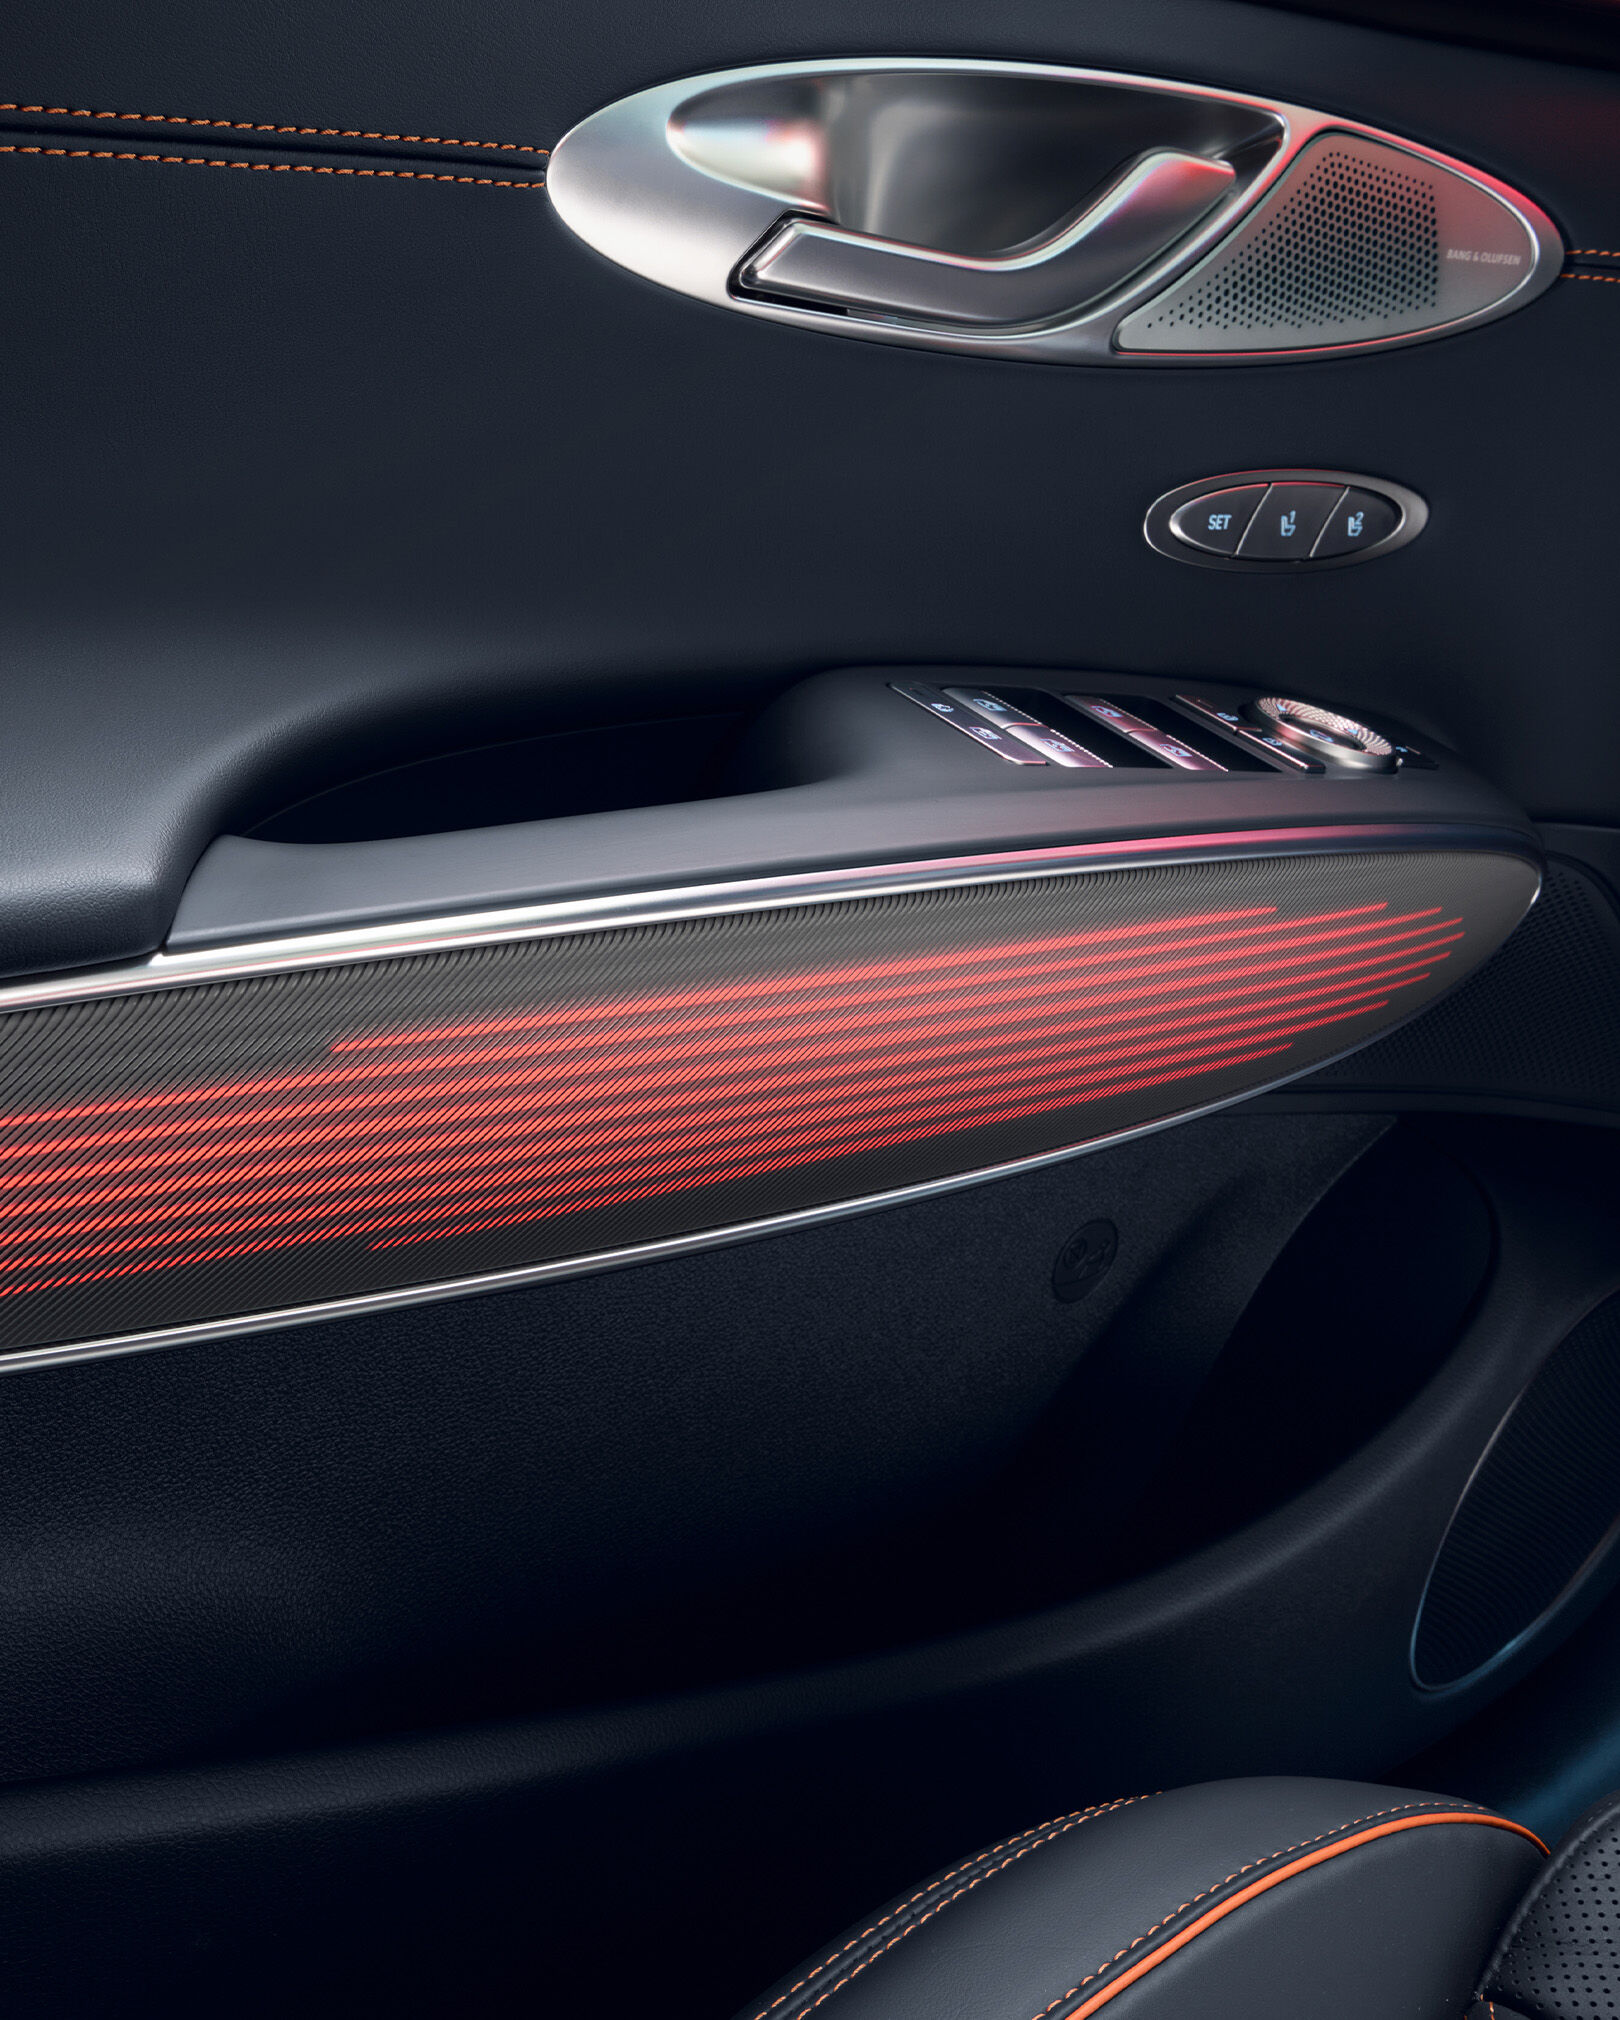 GV70 스포츠 패키지 차량 내부 문 손잡이의 붉은빛을 띄는 무드 조명이 보입니다. 그 위로는 문을 열 수 있는 손잡이와 다양한 제어 장치 버튼이 위치합니다.